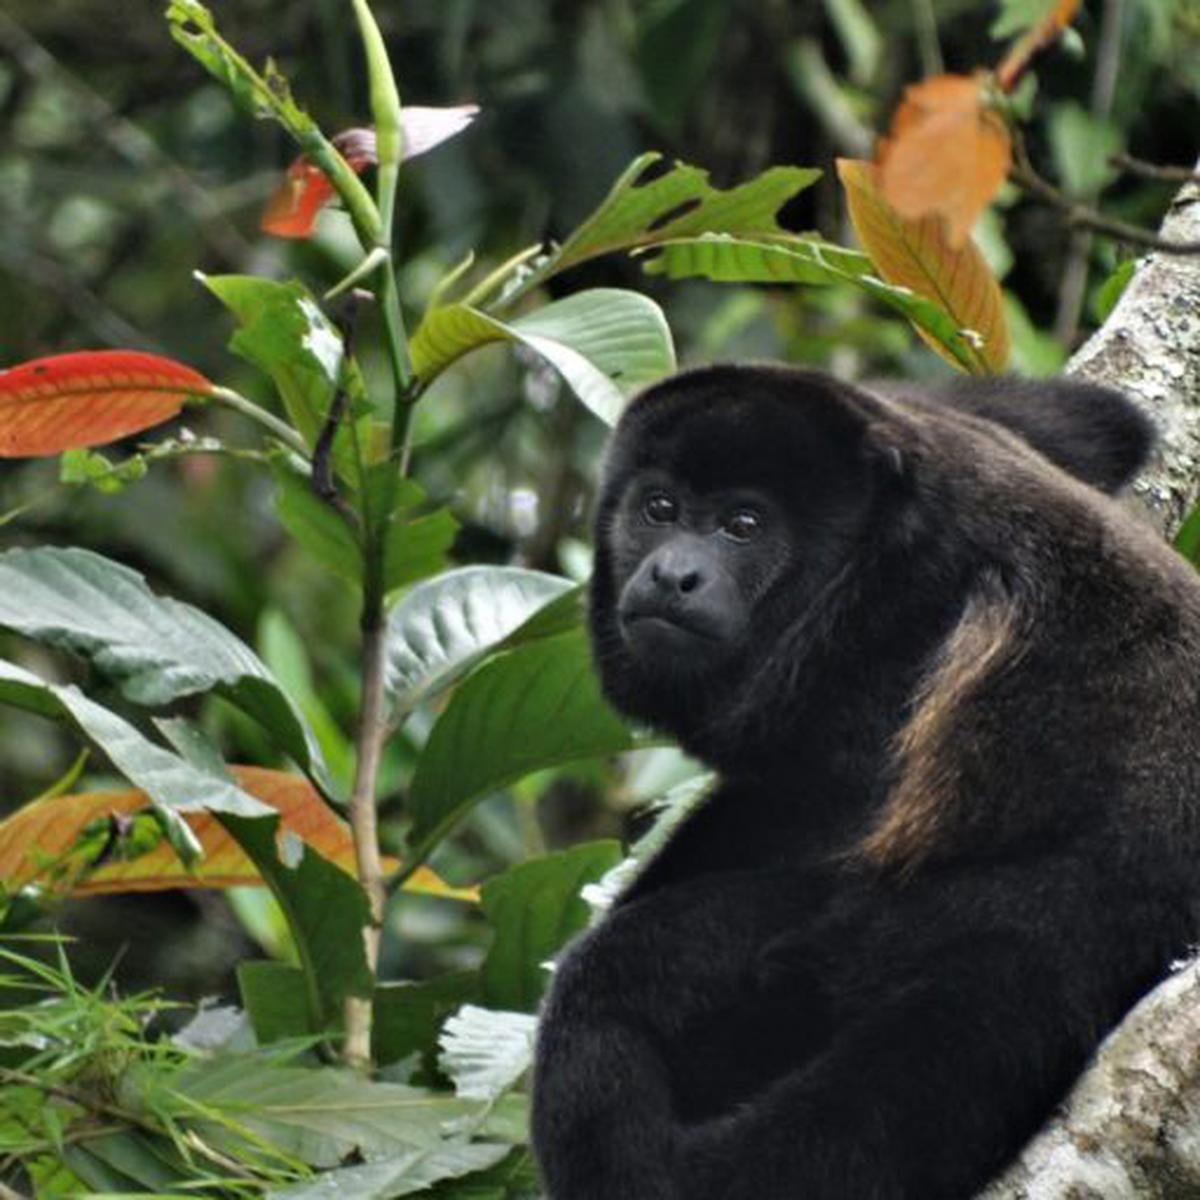 Mono machín de Tumbes es uno de los primates más amenazados del mundo, Noticias